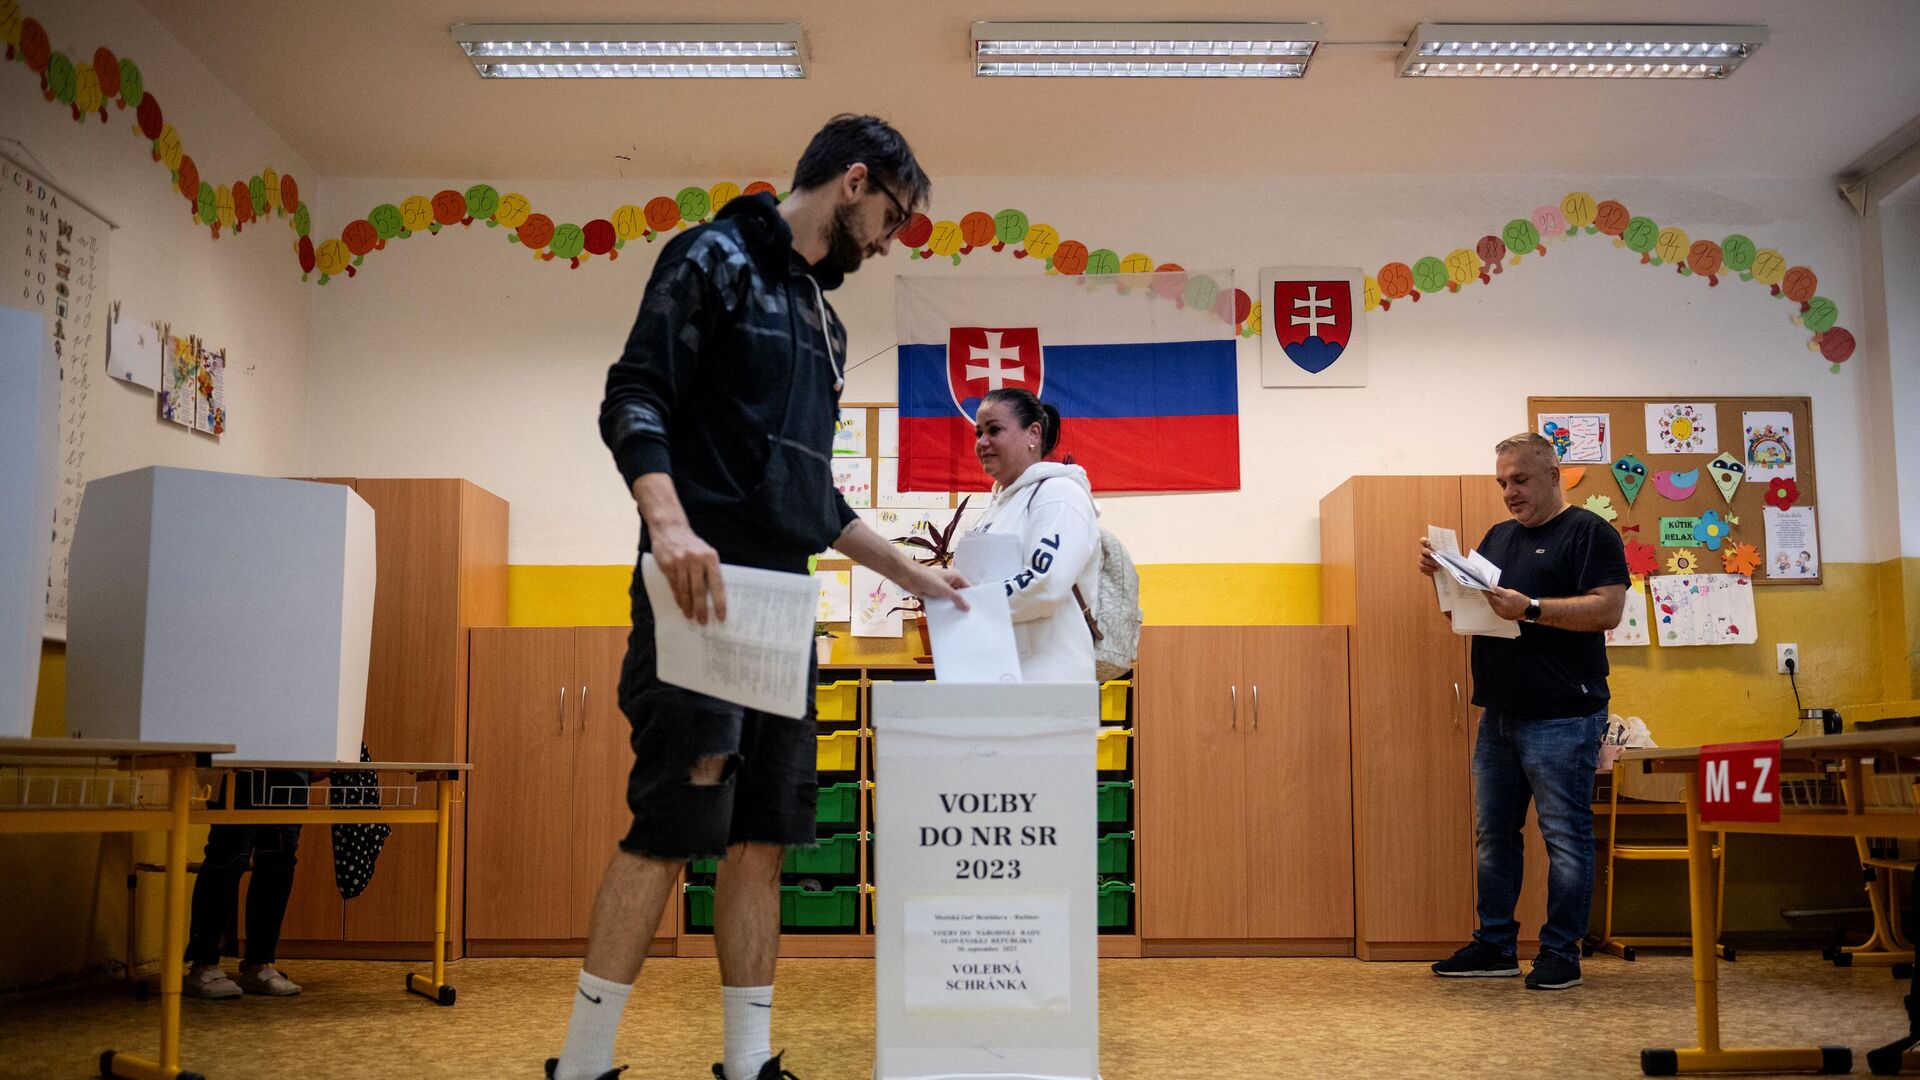 Мужчина опускает свой бюллетень в урну на избирательном участке в Братиславе в Словакии. 30 сентября 2023 - РИА Новости, 1920, 30.09.2023